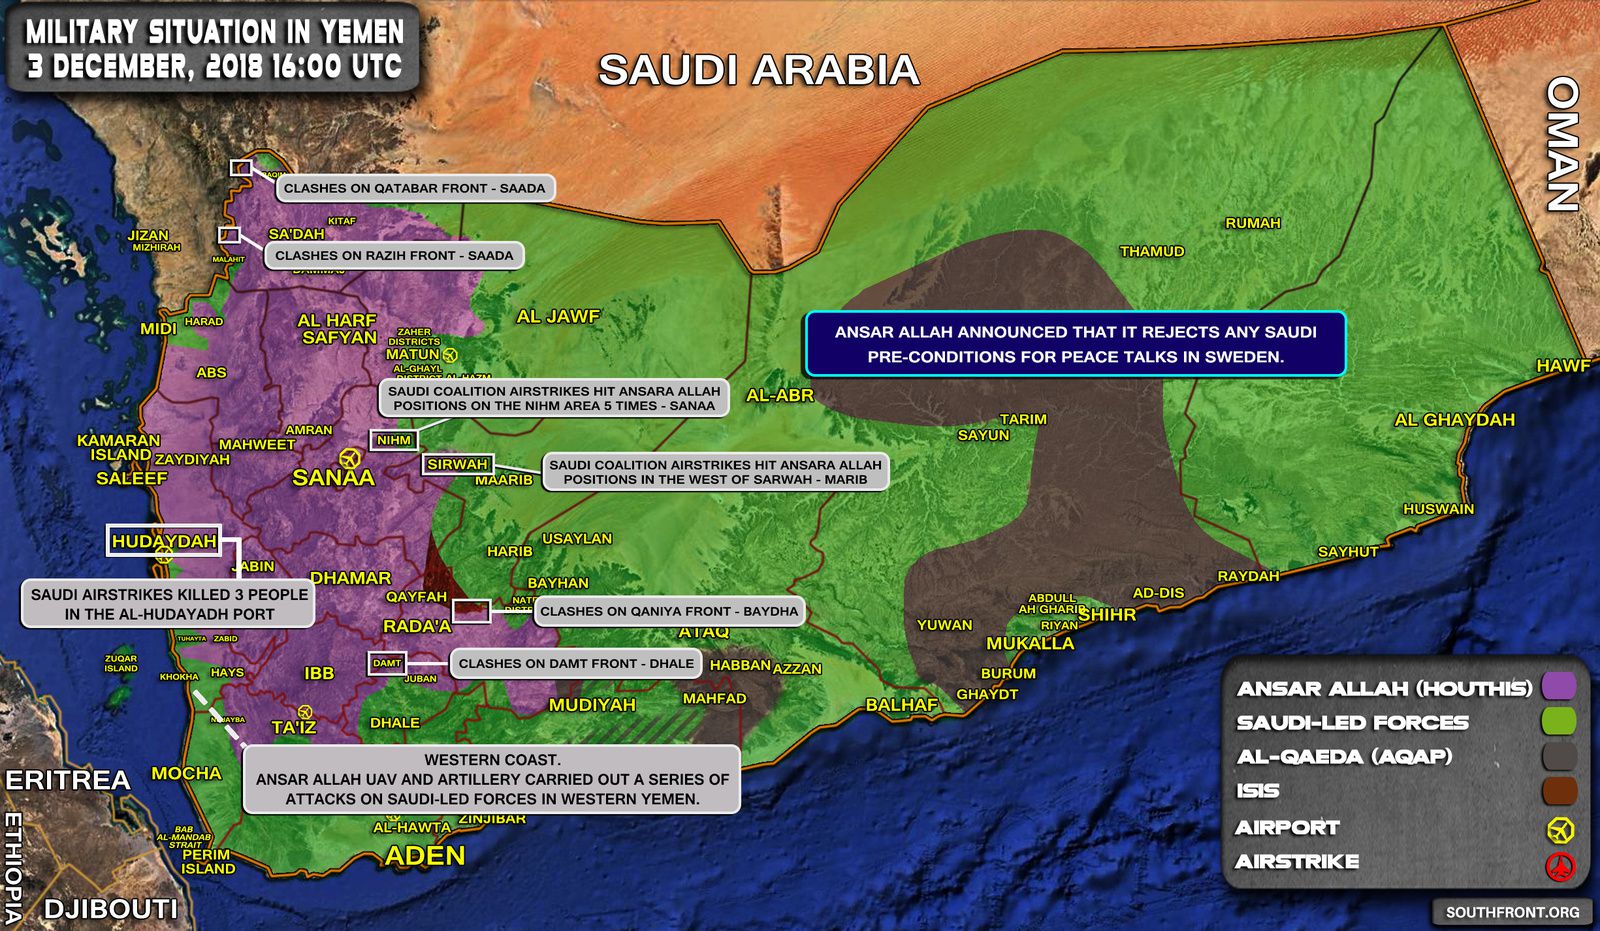 [Carte] Situation militaire au Yémen au 3 décembre 2018 (Southfront)